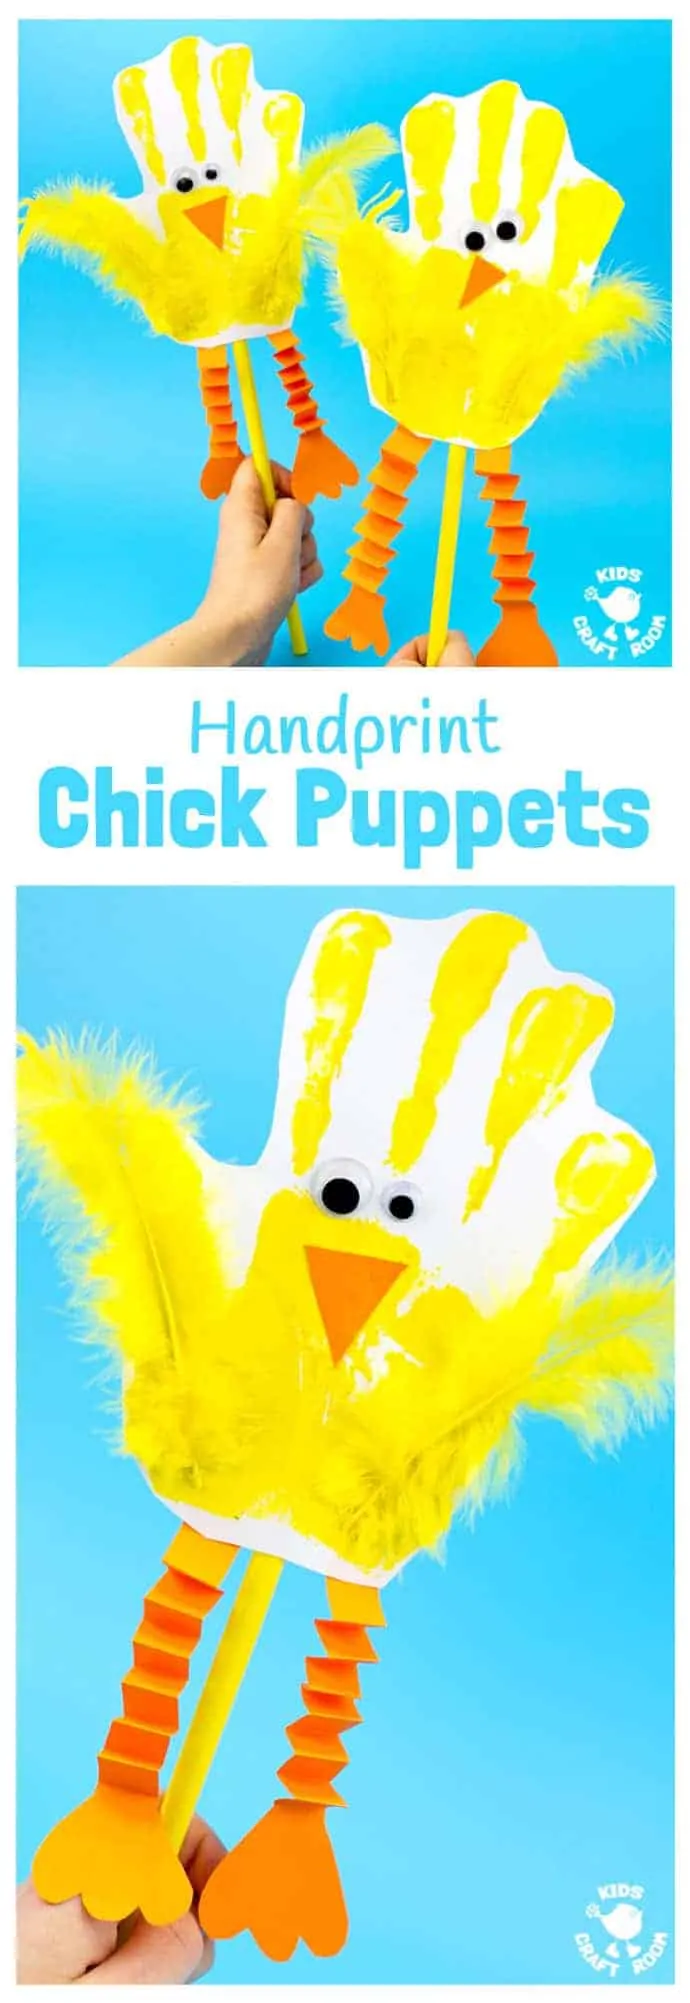 Handprint Chick Puppets son una gran manualidad de primavera o manualidad de Pascua para niños.  ¡Este arte de pollitos se ve súper lindo y los niños también pueden jugar con ellos!  Una artesanía de huellas de manos tan divertida para fomentar el juego dramático y la narración de historias.